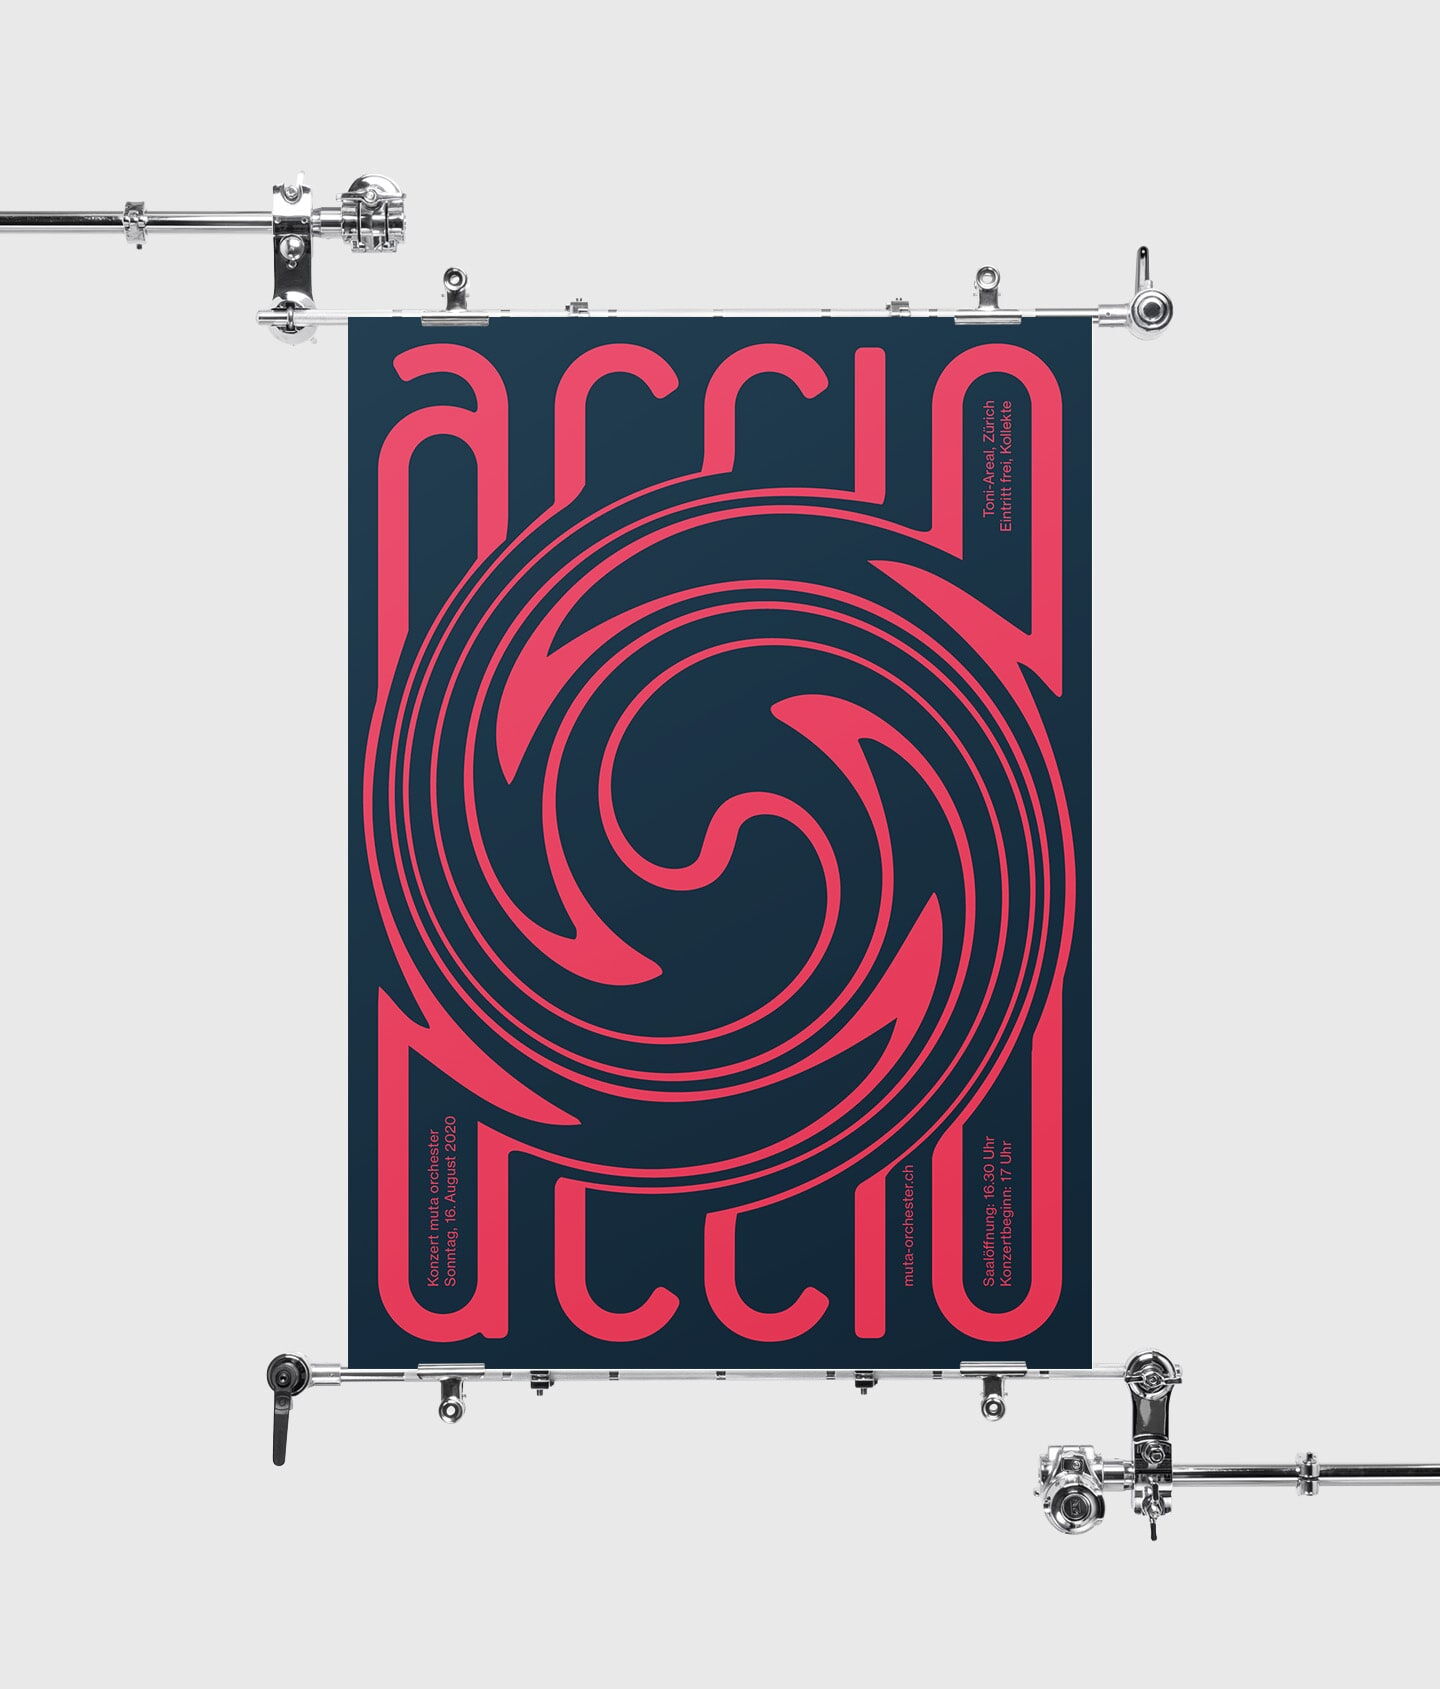 Accio poster design by Mauro Simeon